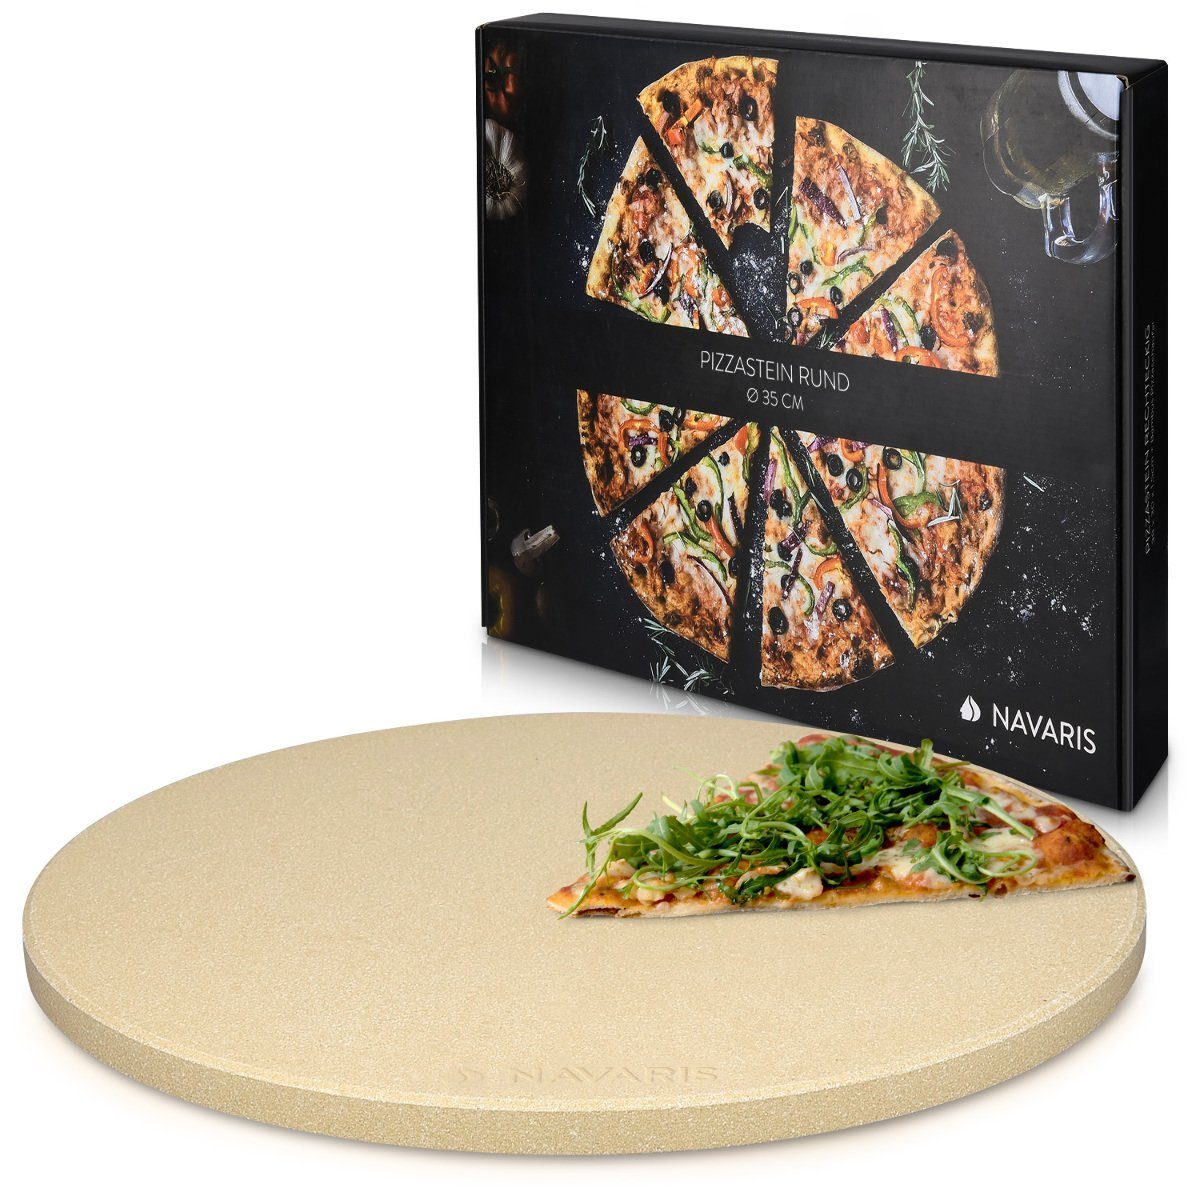 Navaris Pizzastein Pizzastein XXL aus Cordierit für Ofen und Grill, inkl. Rezeptbuch, Korderit-Keramik